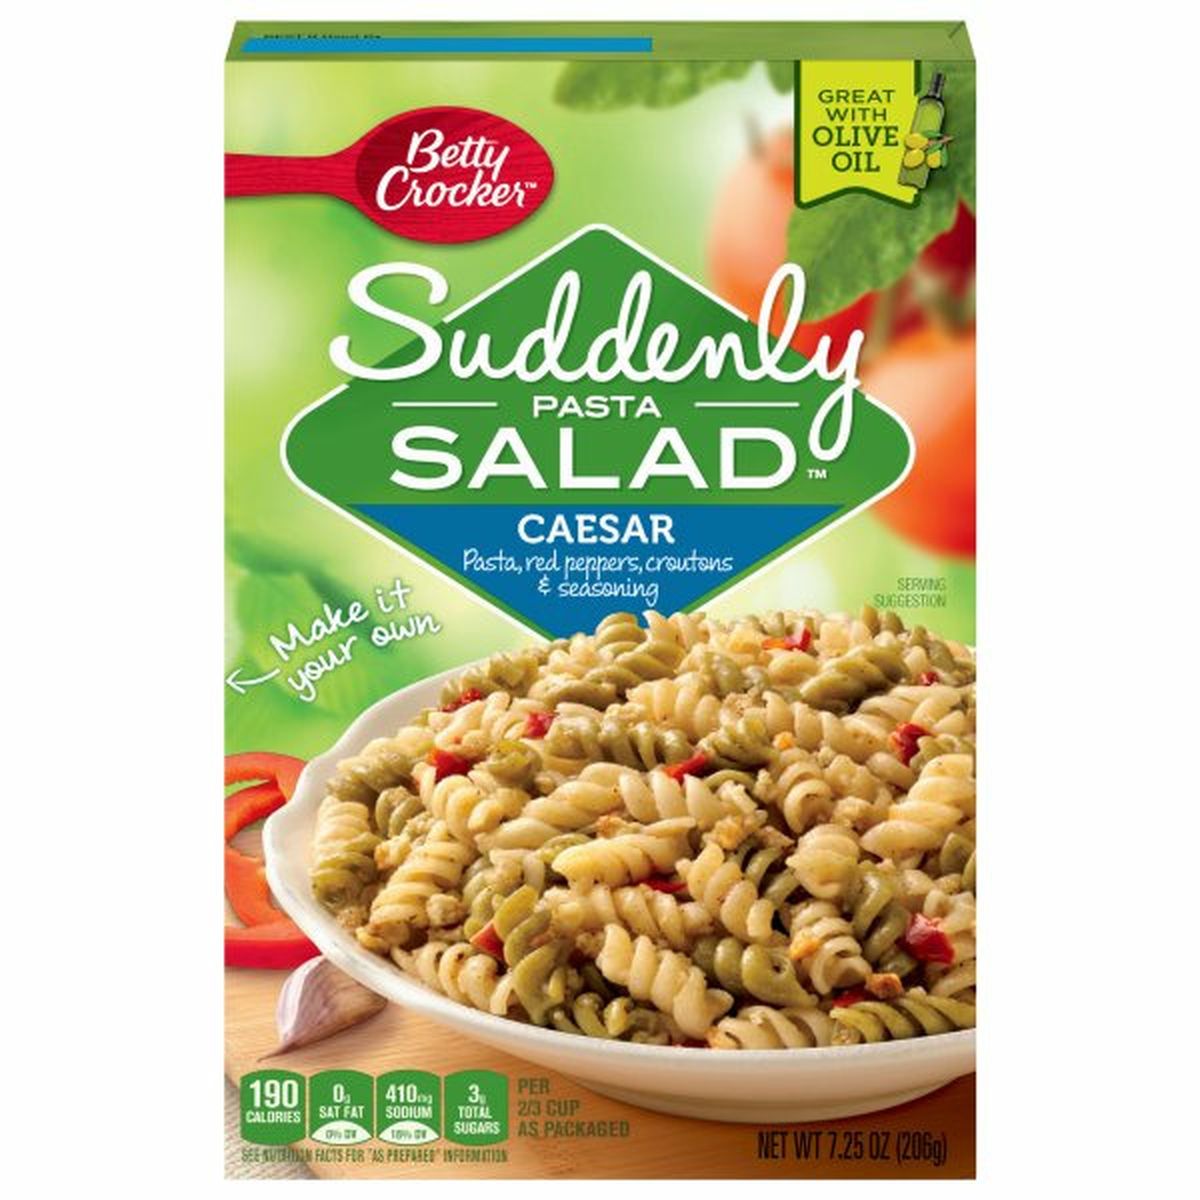 Calories in Suddenly Pasta Salad Pasta Salad, Caesar